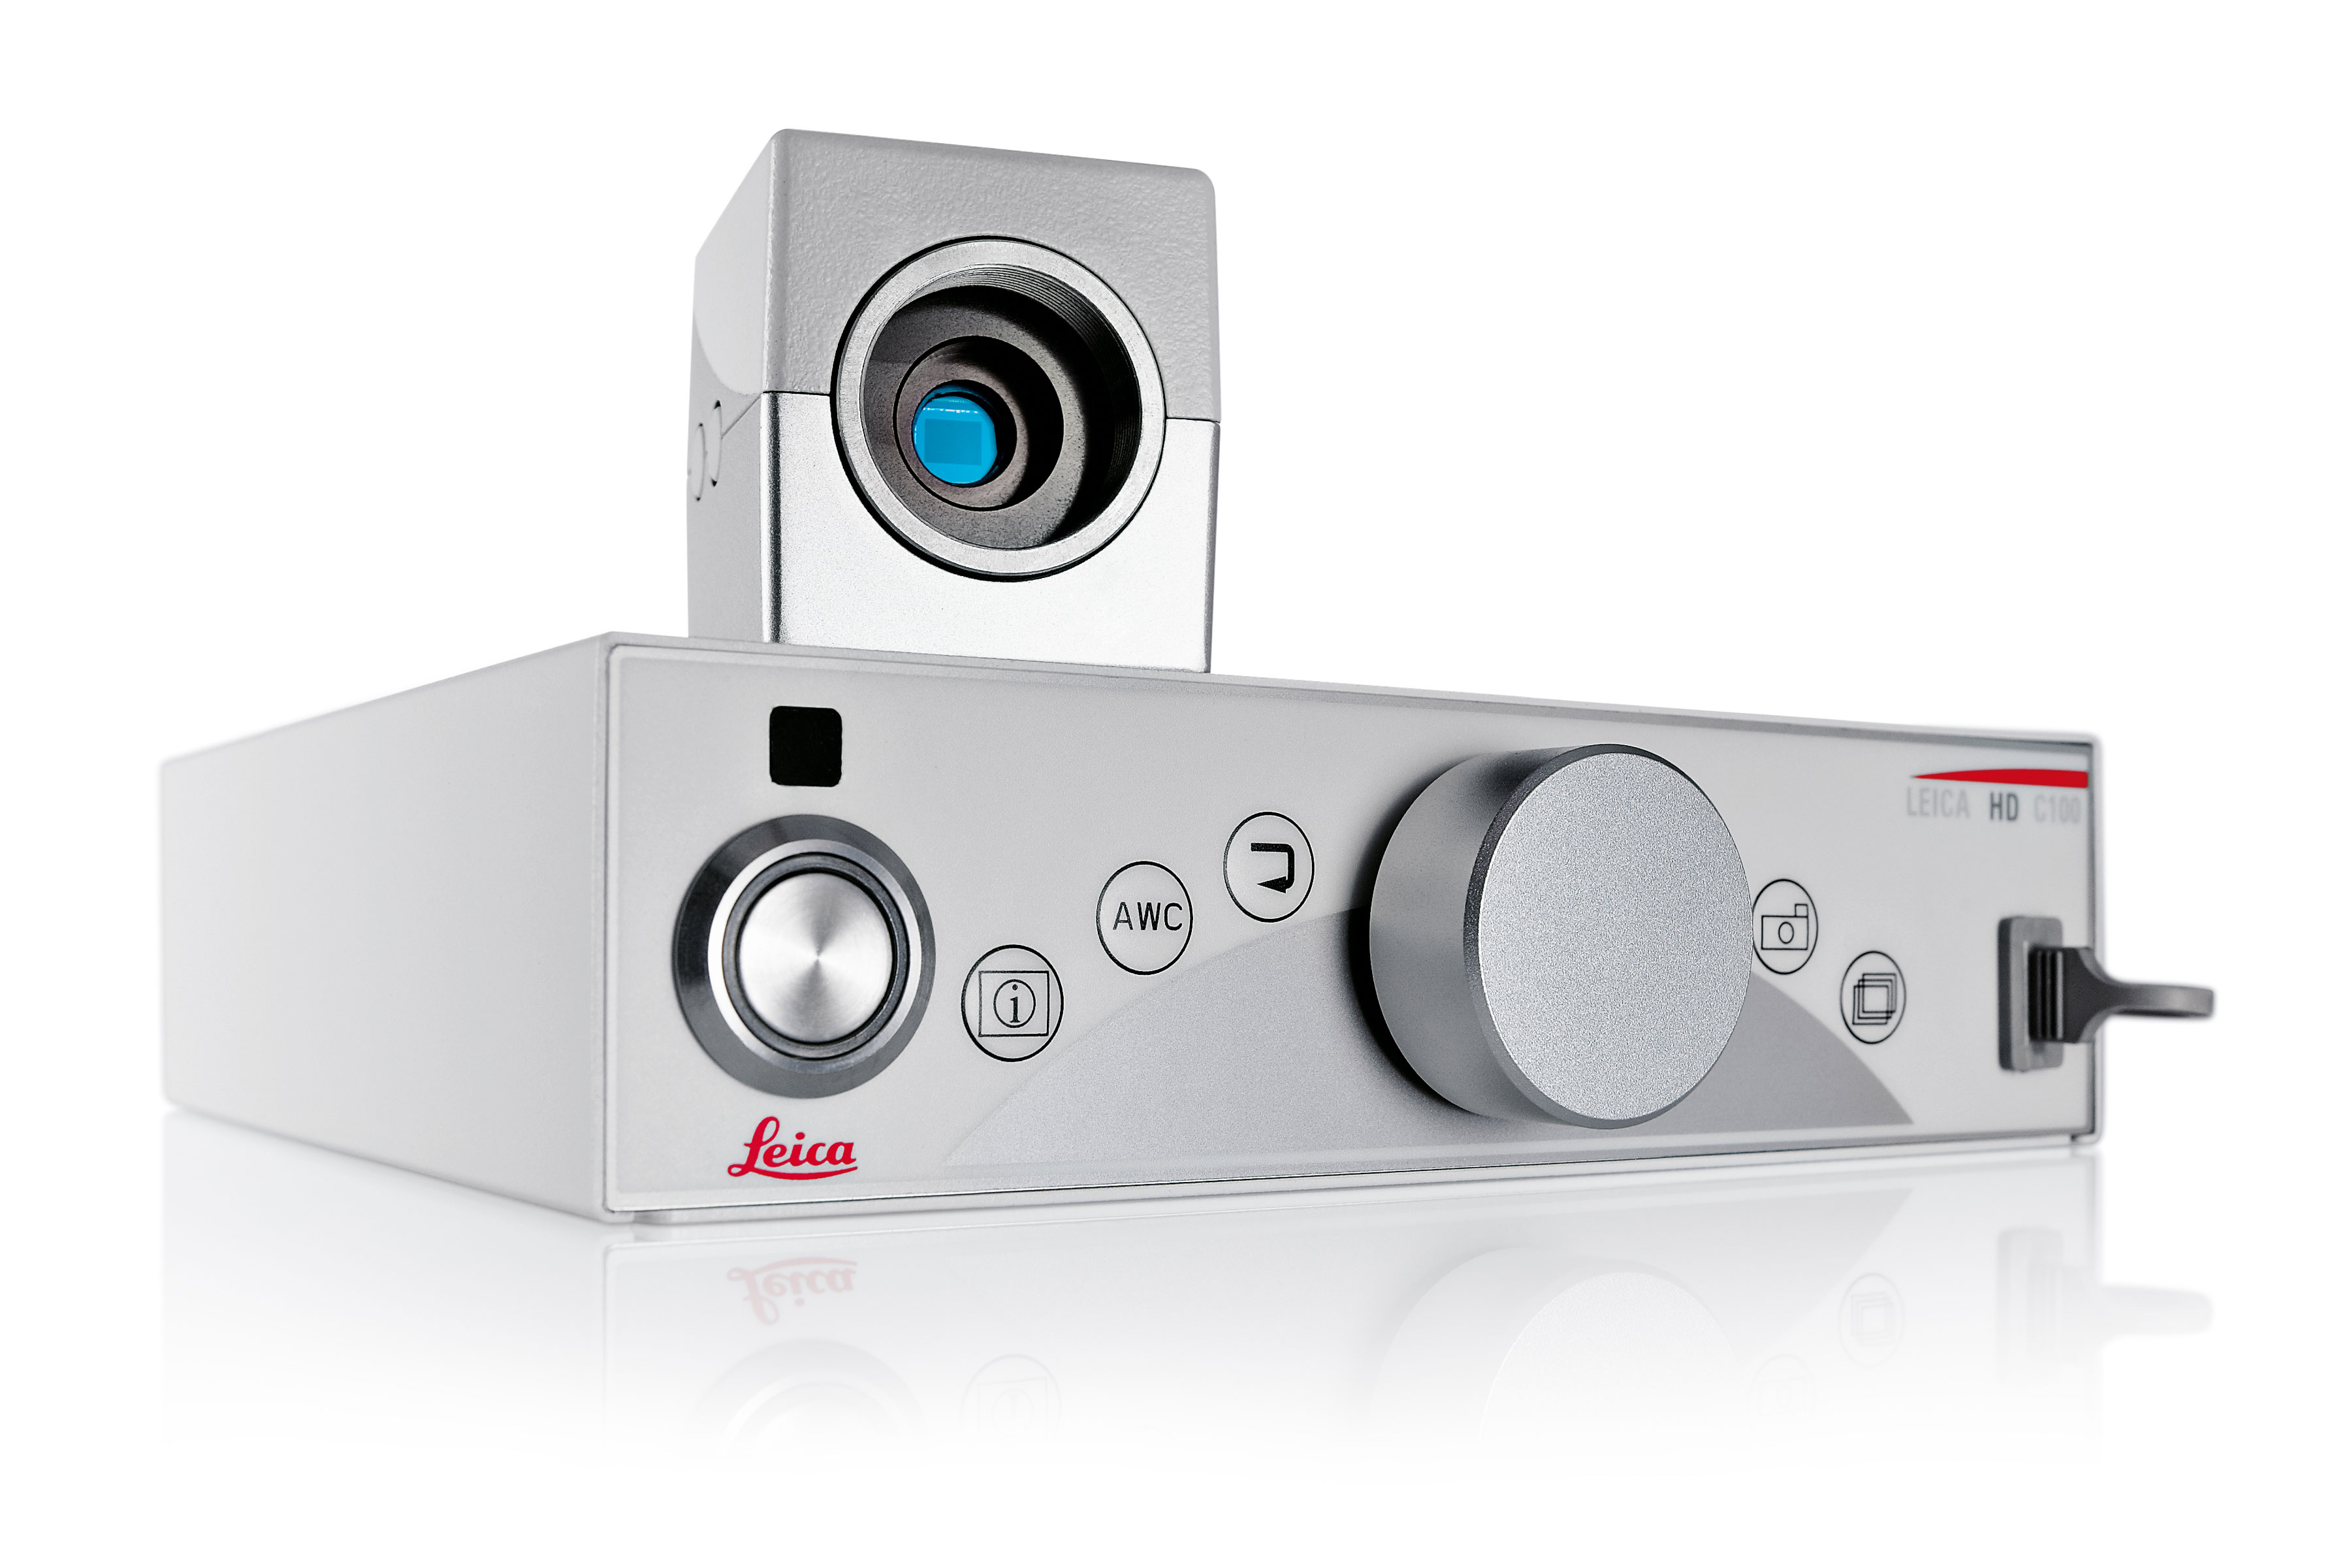 La cámara médica Leica HD C100 ofrece resolución HD (alta definición) y SD (definición estándar) a través de una interfaz sencilla y permite almacenar datos en dispositivos externos fácilmente.